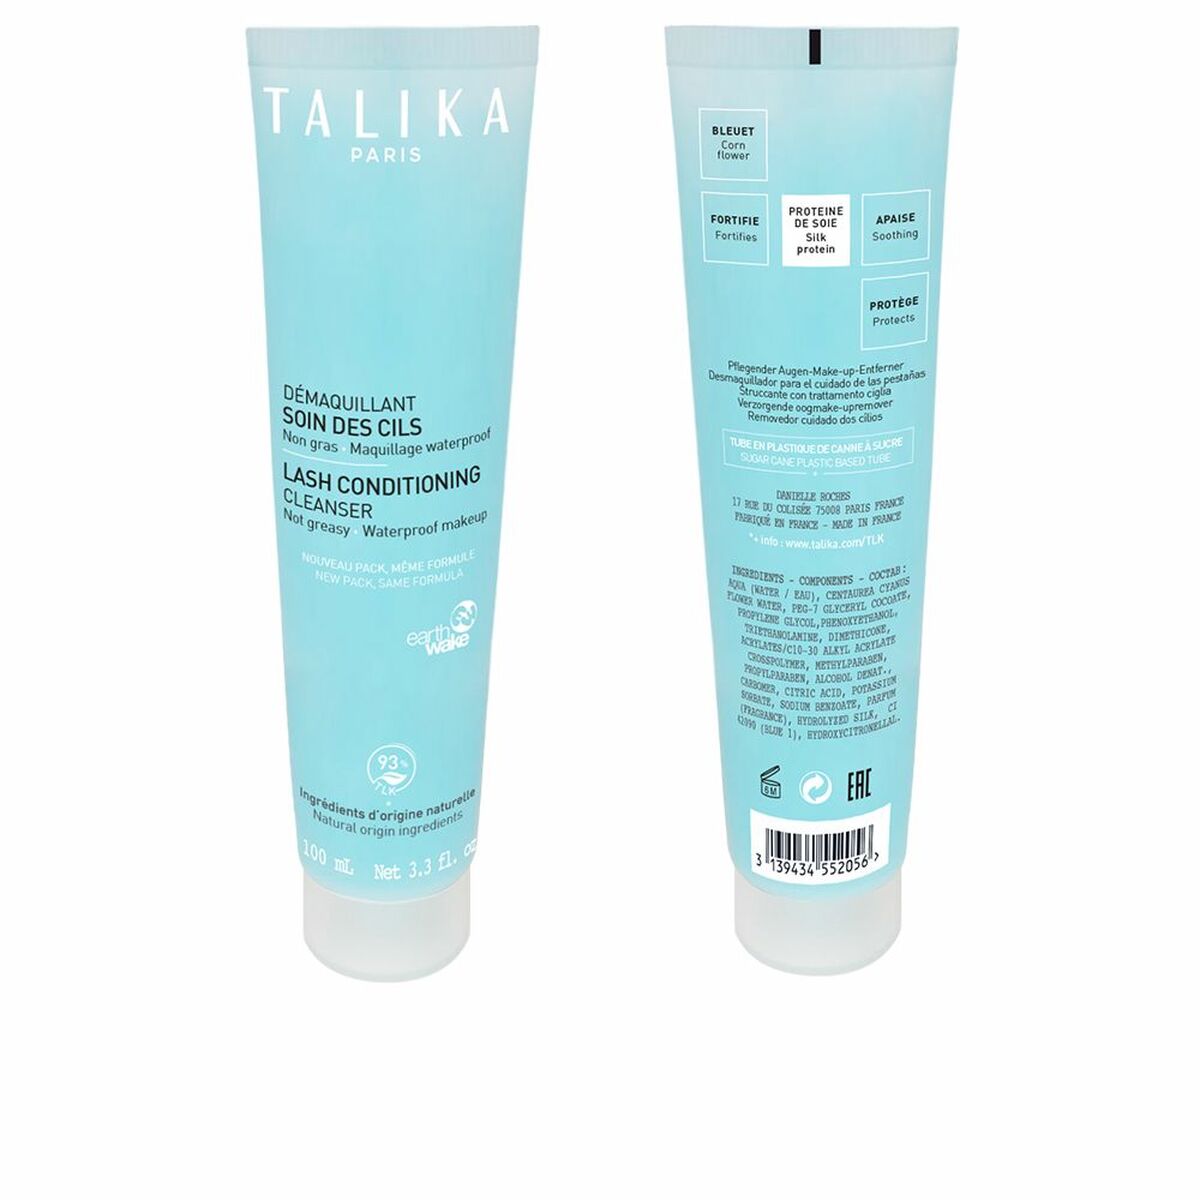 Eyebrow Conditioner Talika Lash Conditioning Tabs